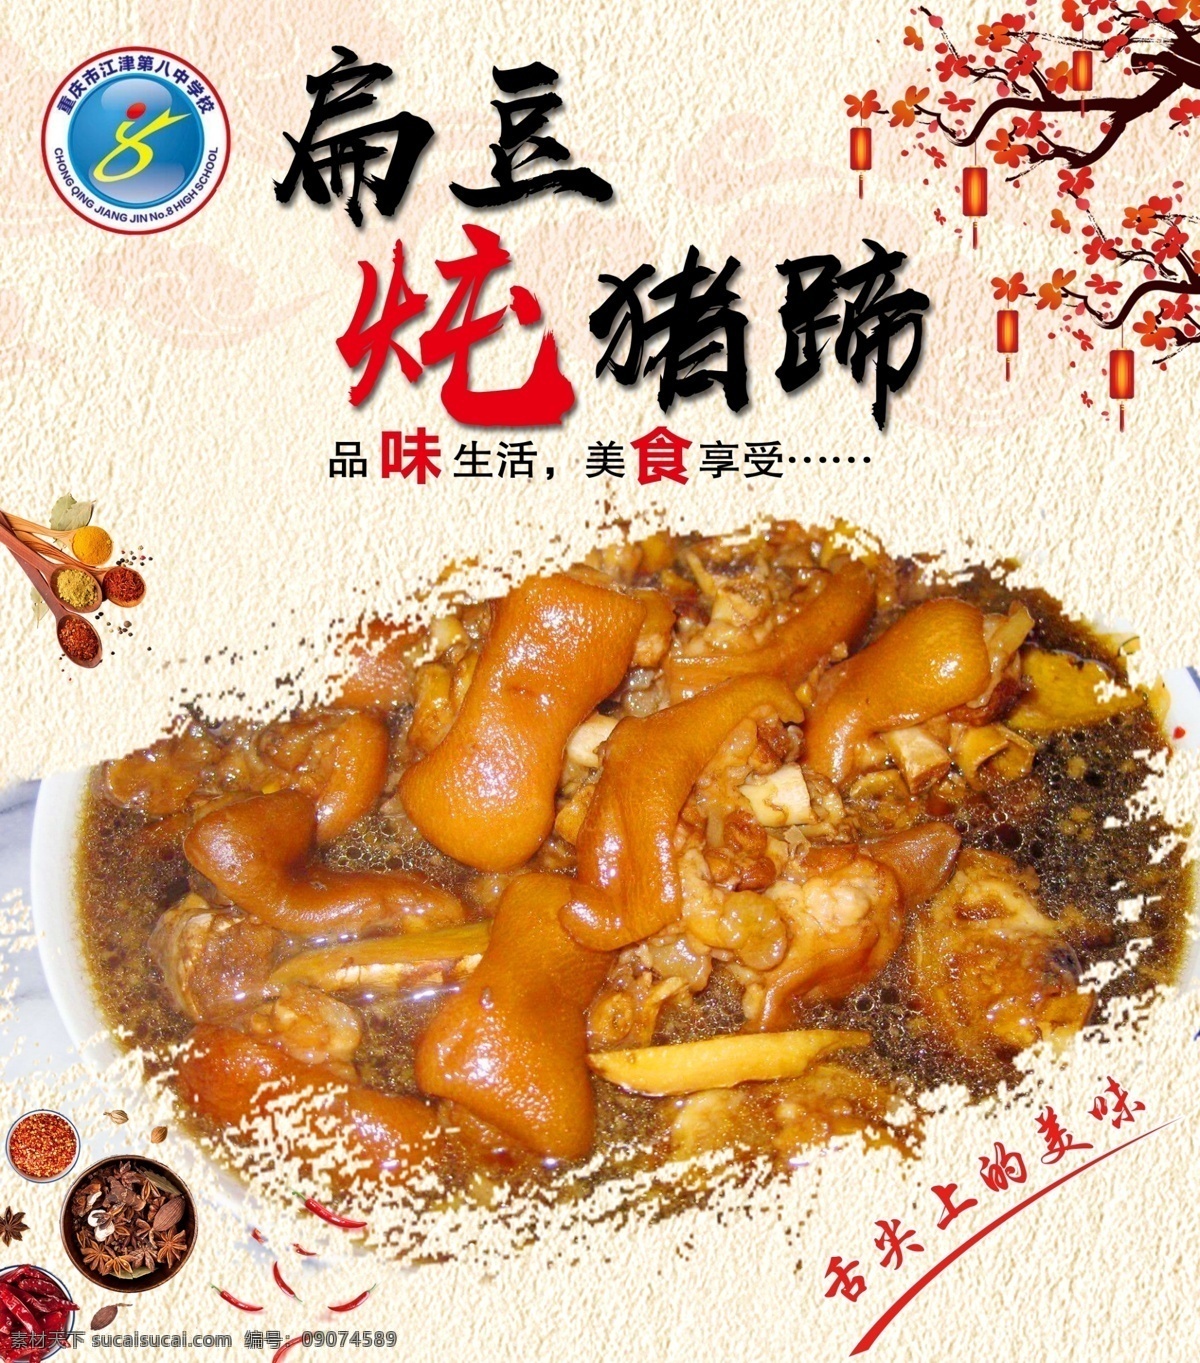 扁豆炖猪蹄 菜谱 调料 炒菜 梅花 花边 猪蹄 菜单菜谱